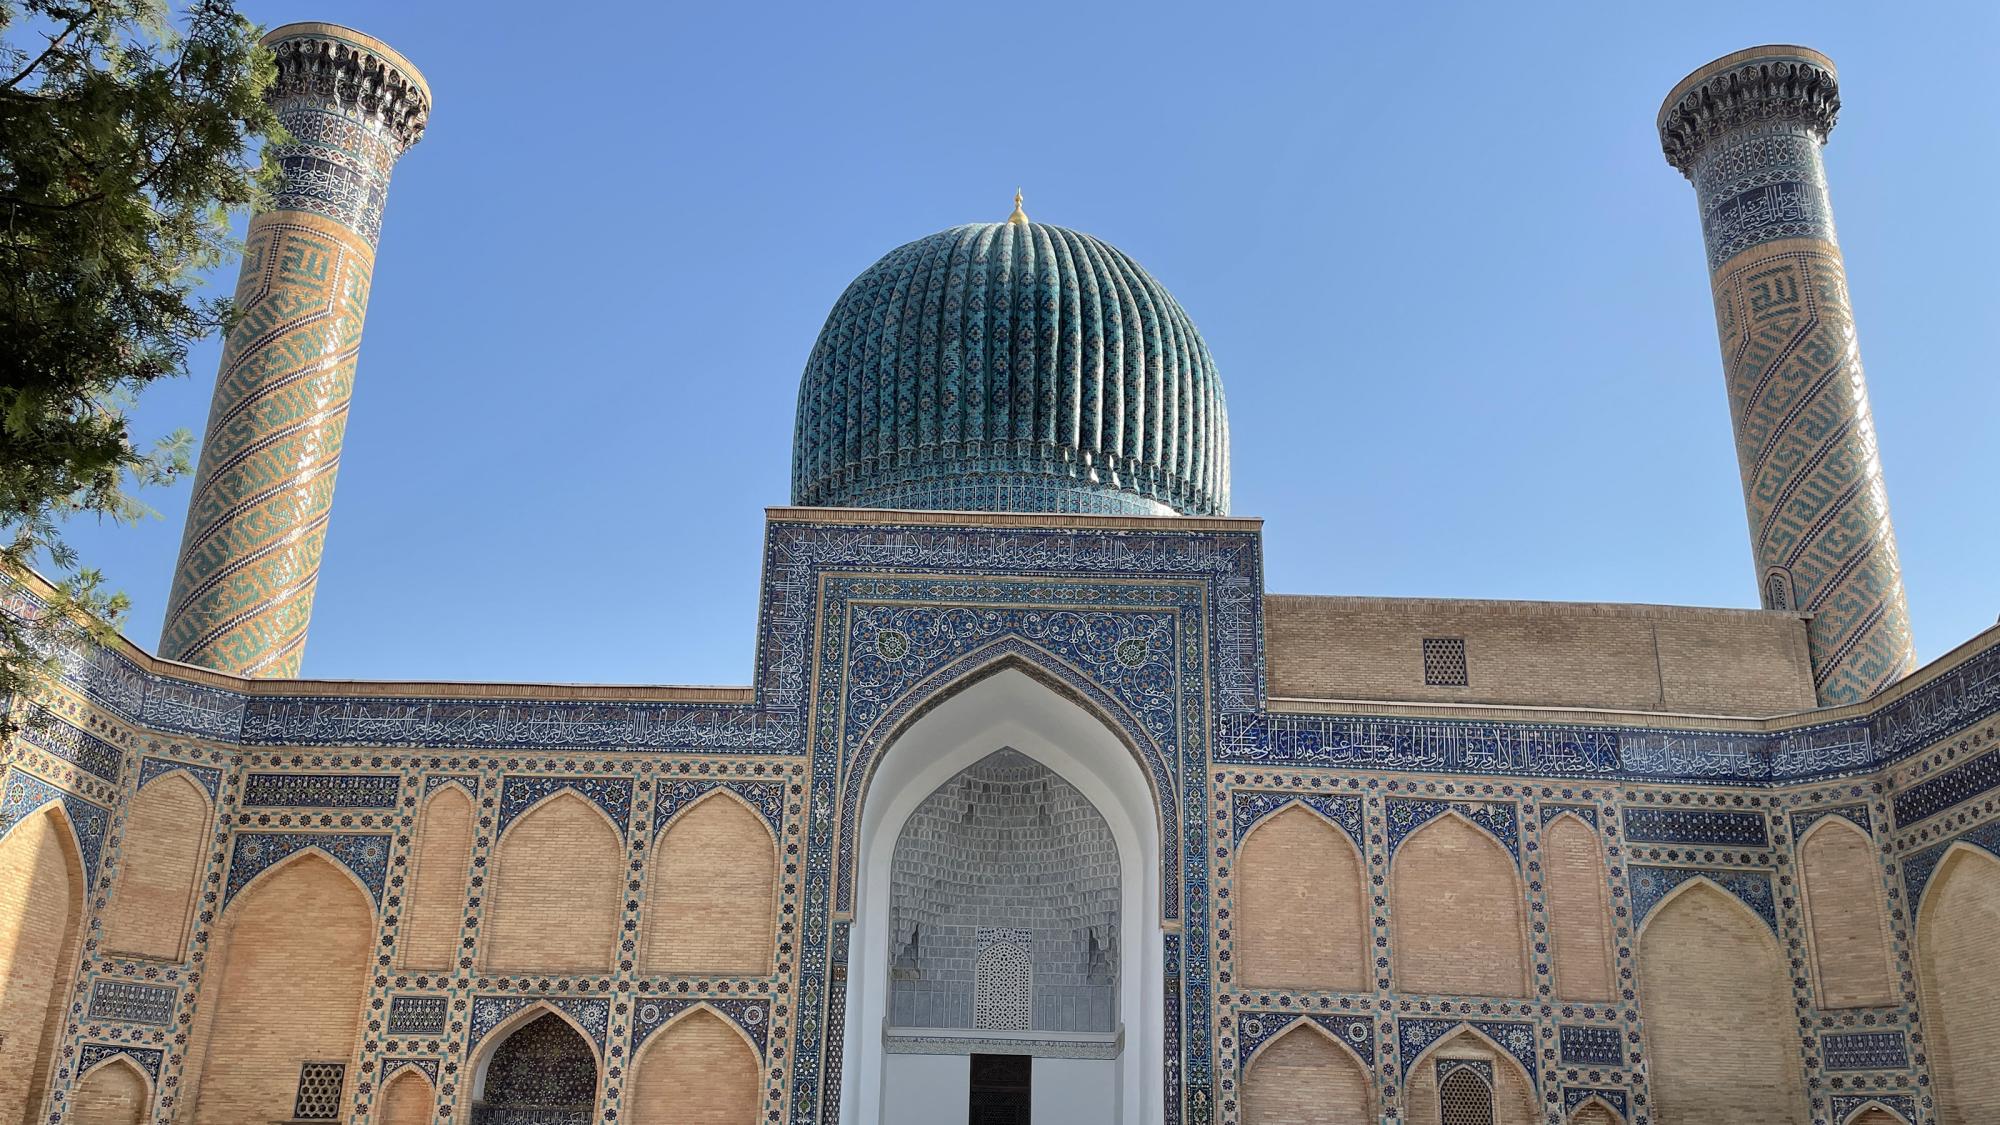 Das Mausoleum Gur-Emir in Samarkand